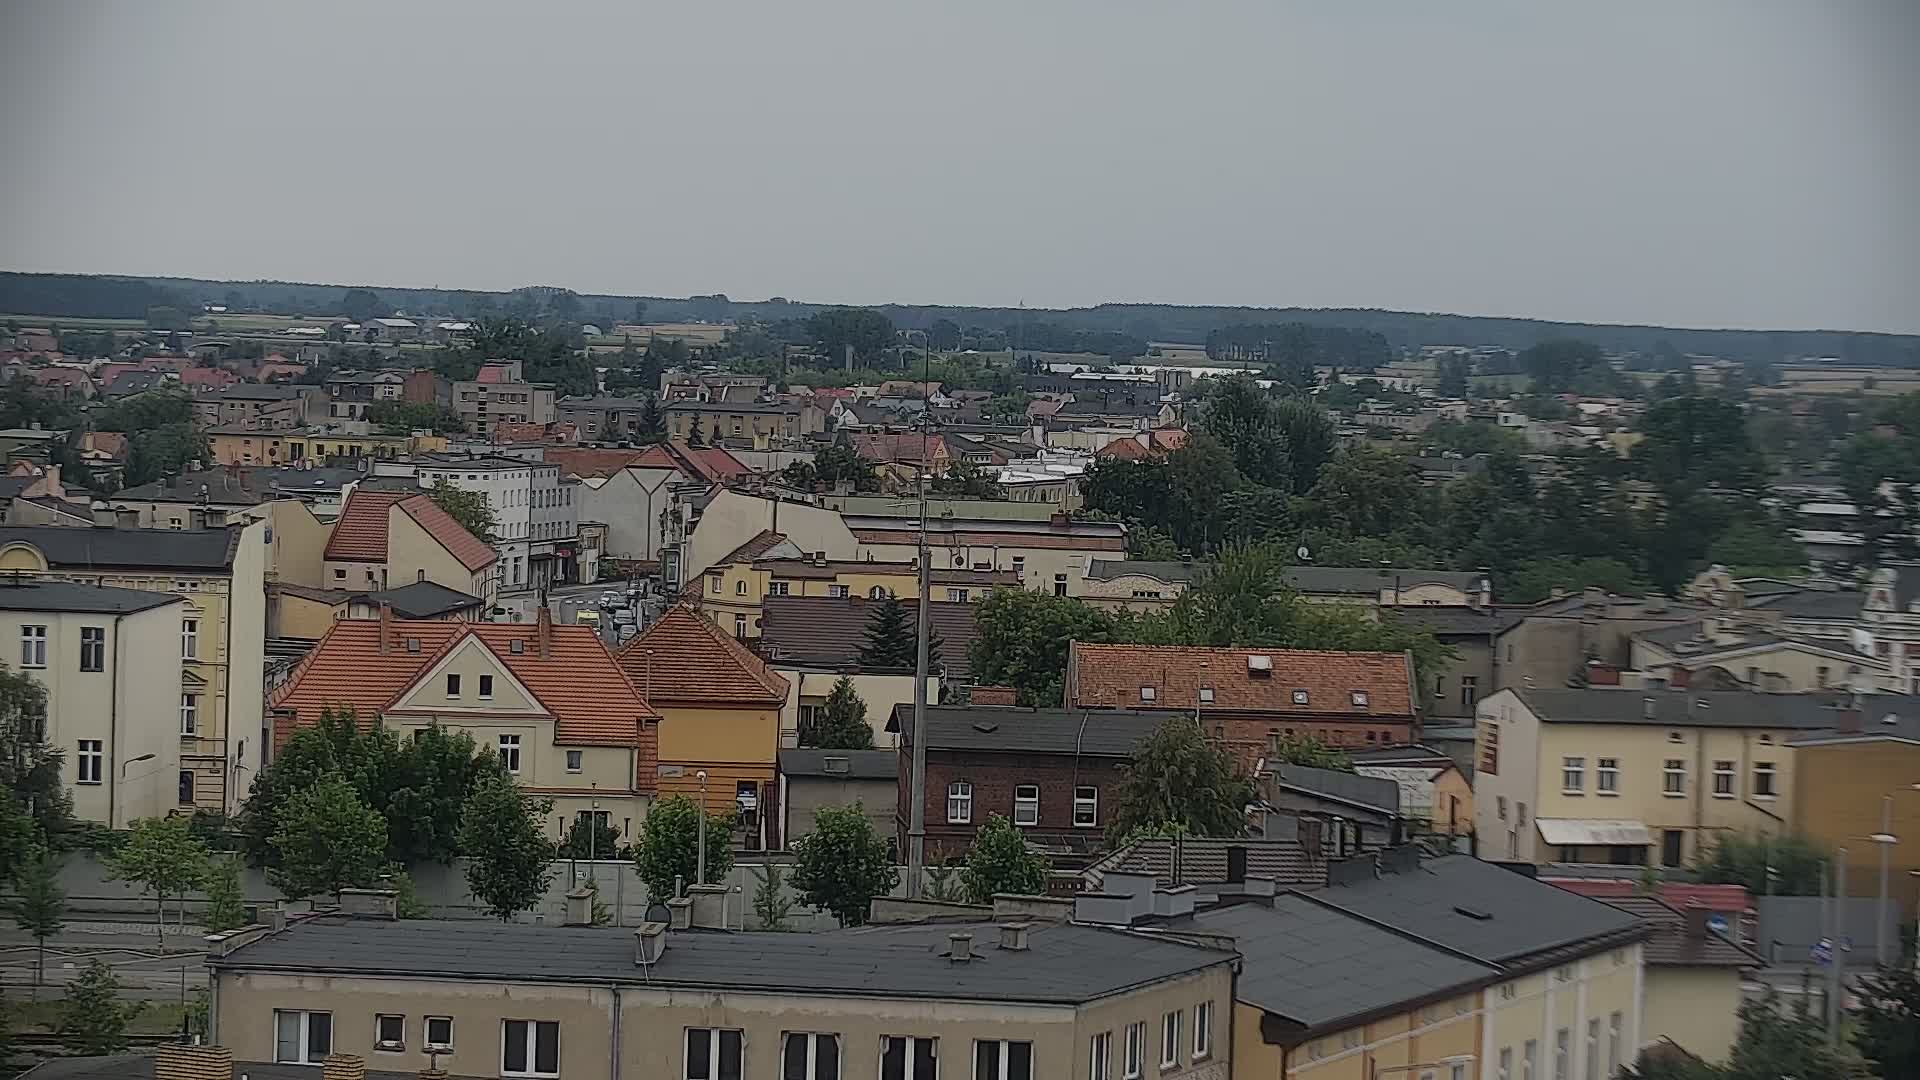 Wągrowiec - panorama of the town